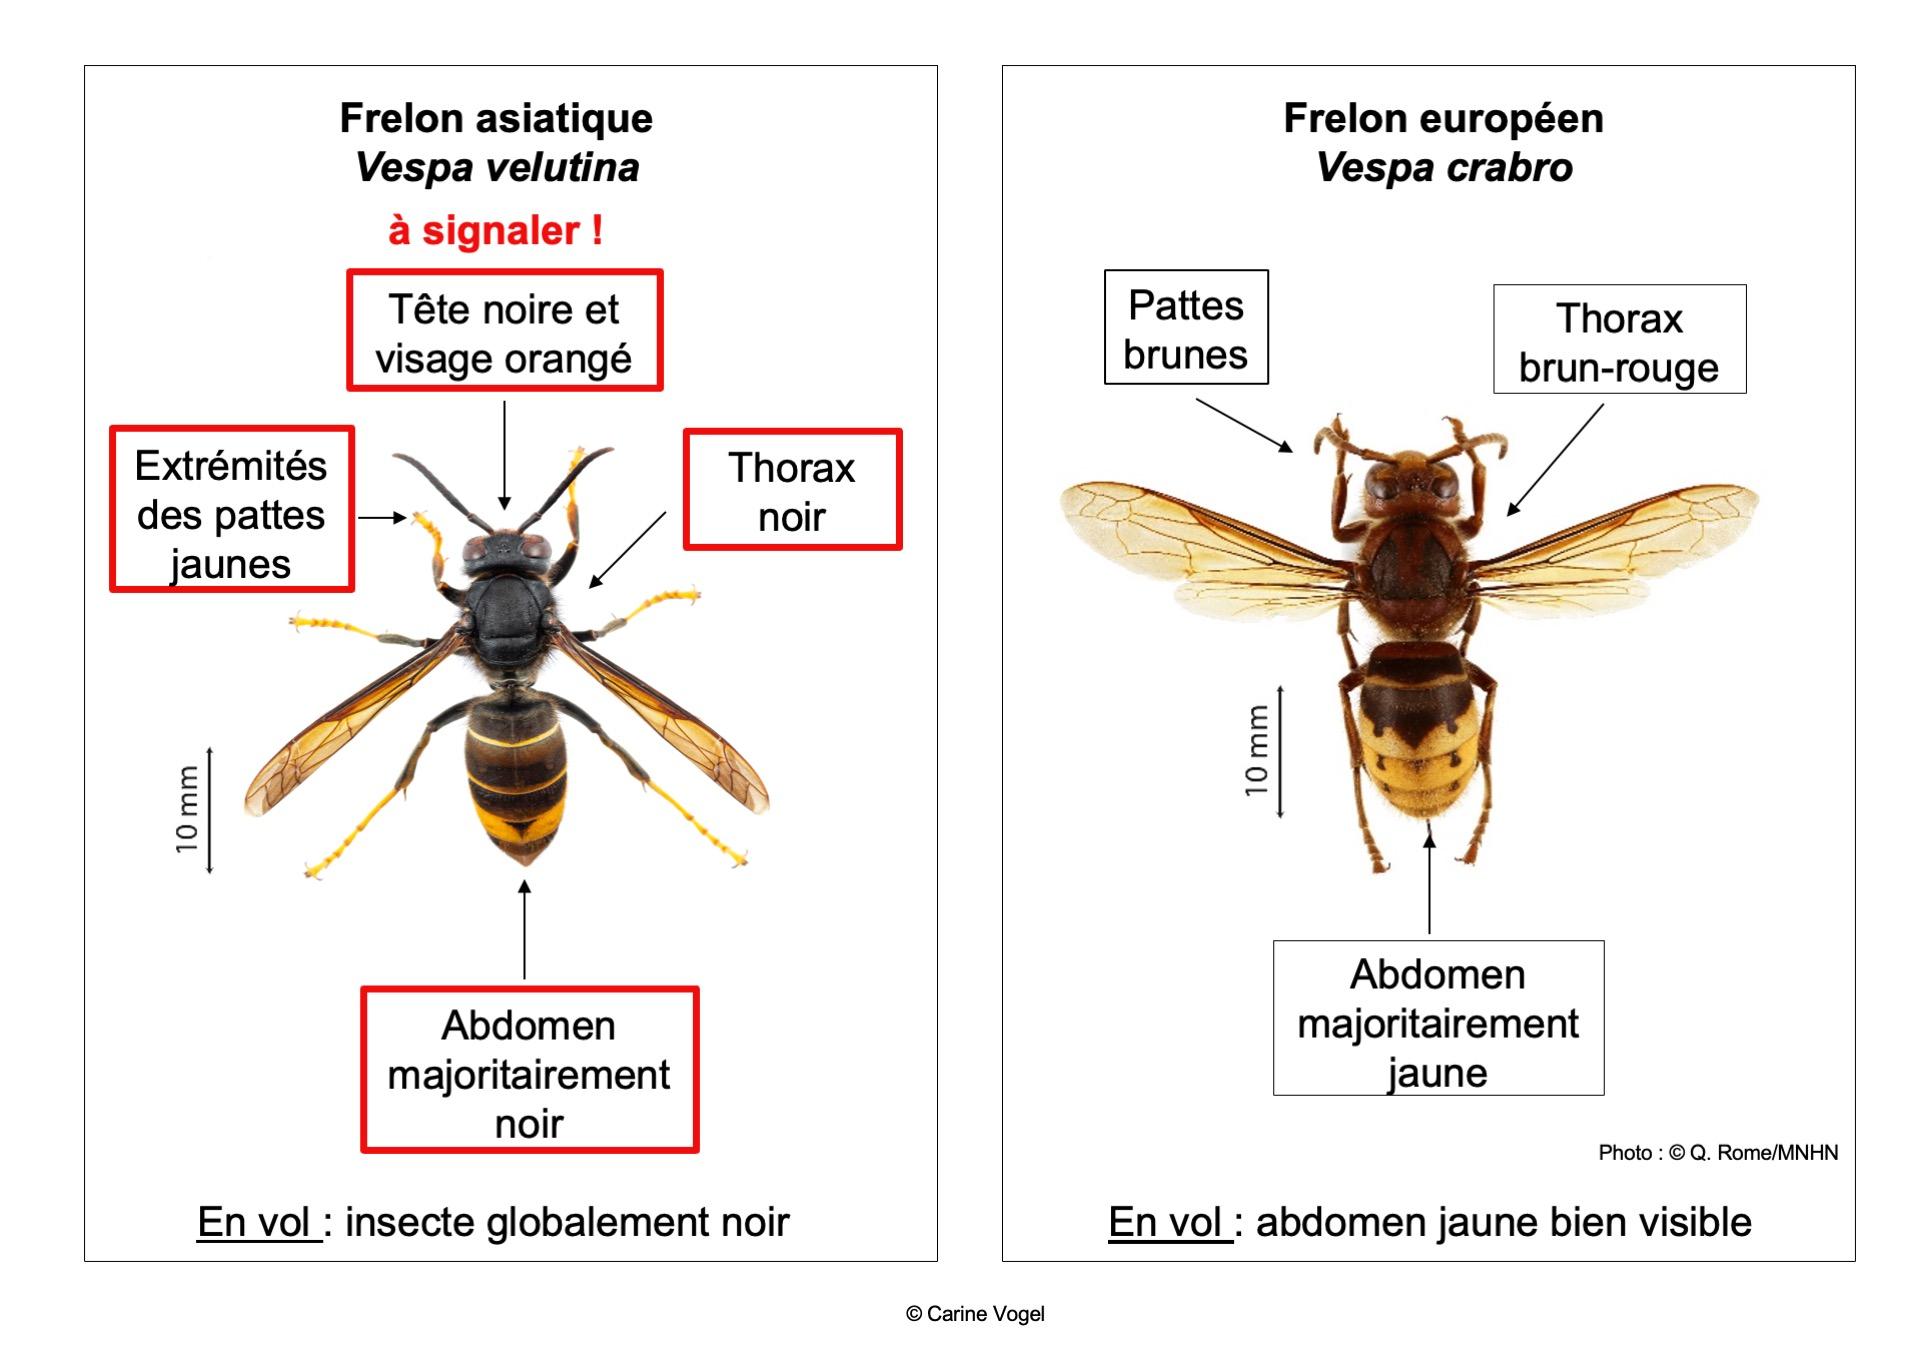 Une illustration permettant de distinguer un frelon asiatique d'un frelon européen. [Q. Rome / MNHN]